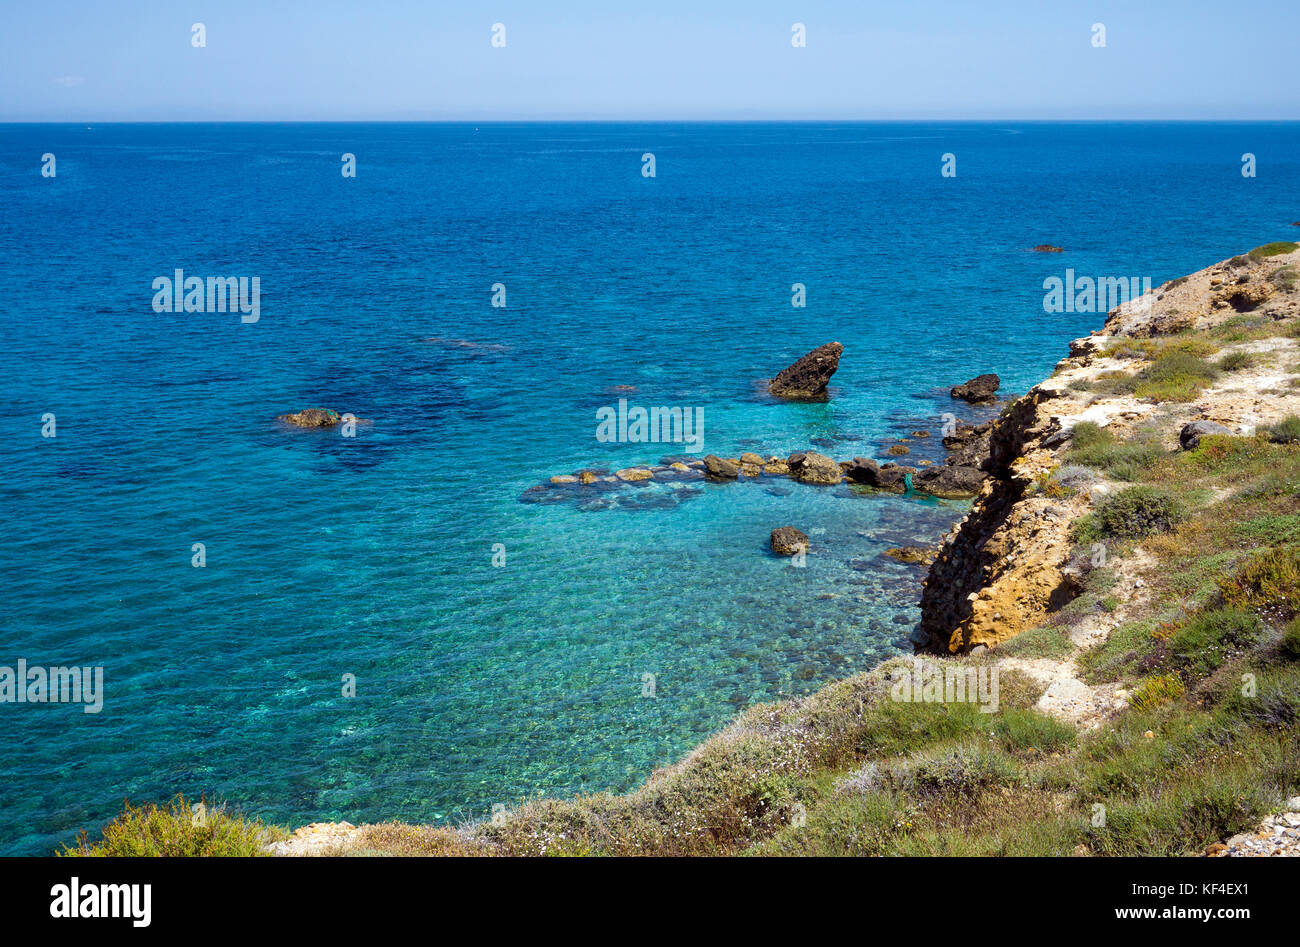 Avis du district 1735 de la mer Égée, la ville de Naxos, l'île de Naxos, Cyclades, Mer Égée, Grèce Banque D'Images